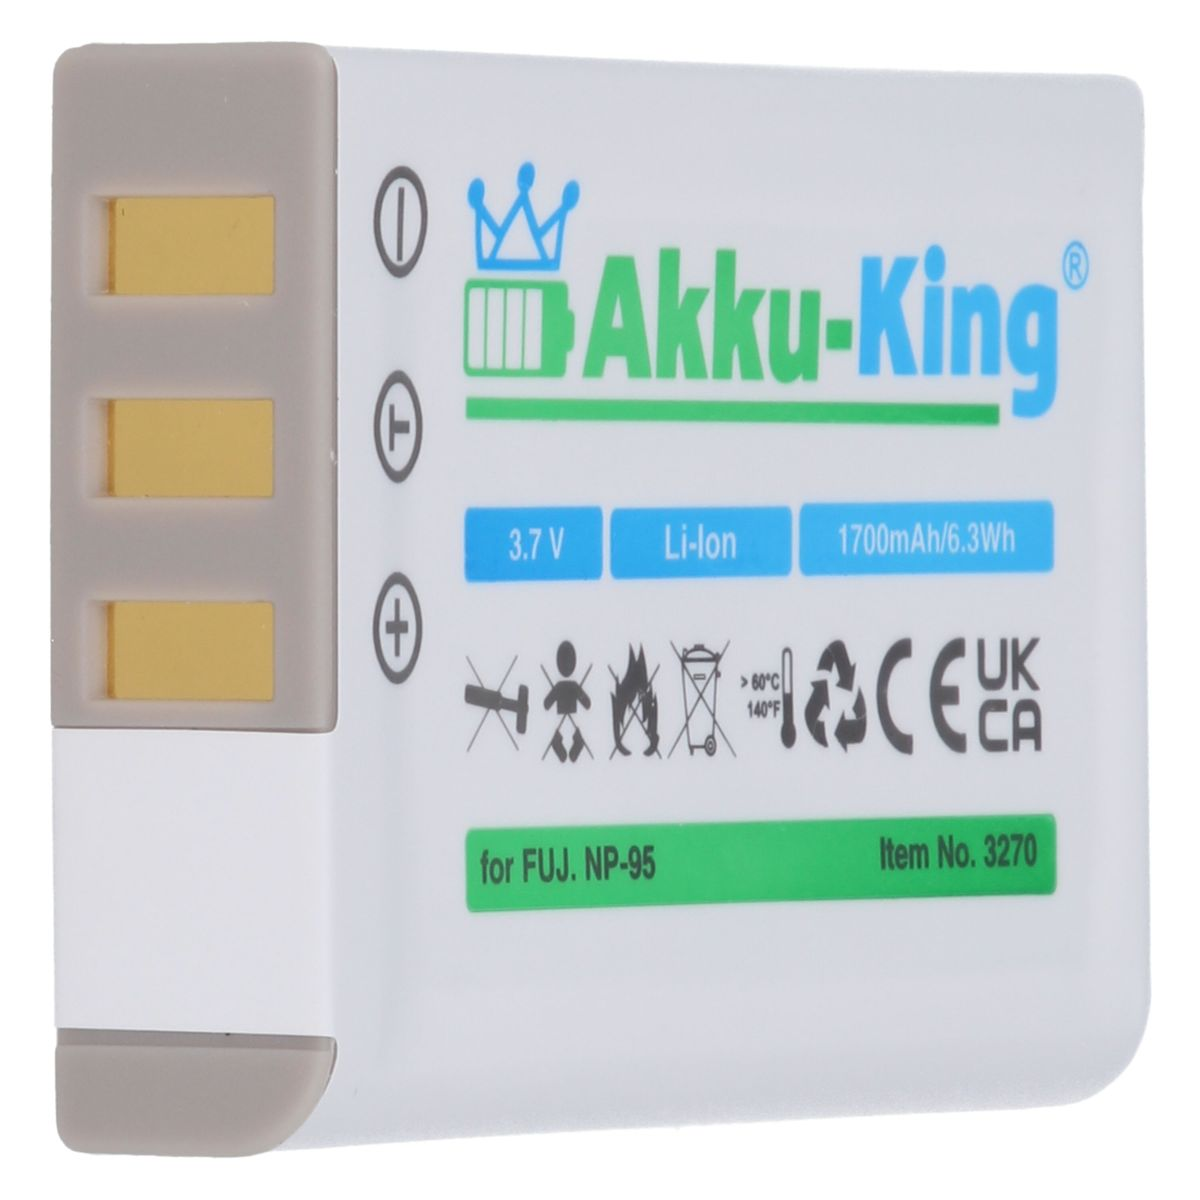 1700mAh mit kompatibel NP-95 AKKU-KING 3.7 Fuji Akku Li-Ion Volt, Kamera-Akku,